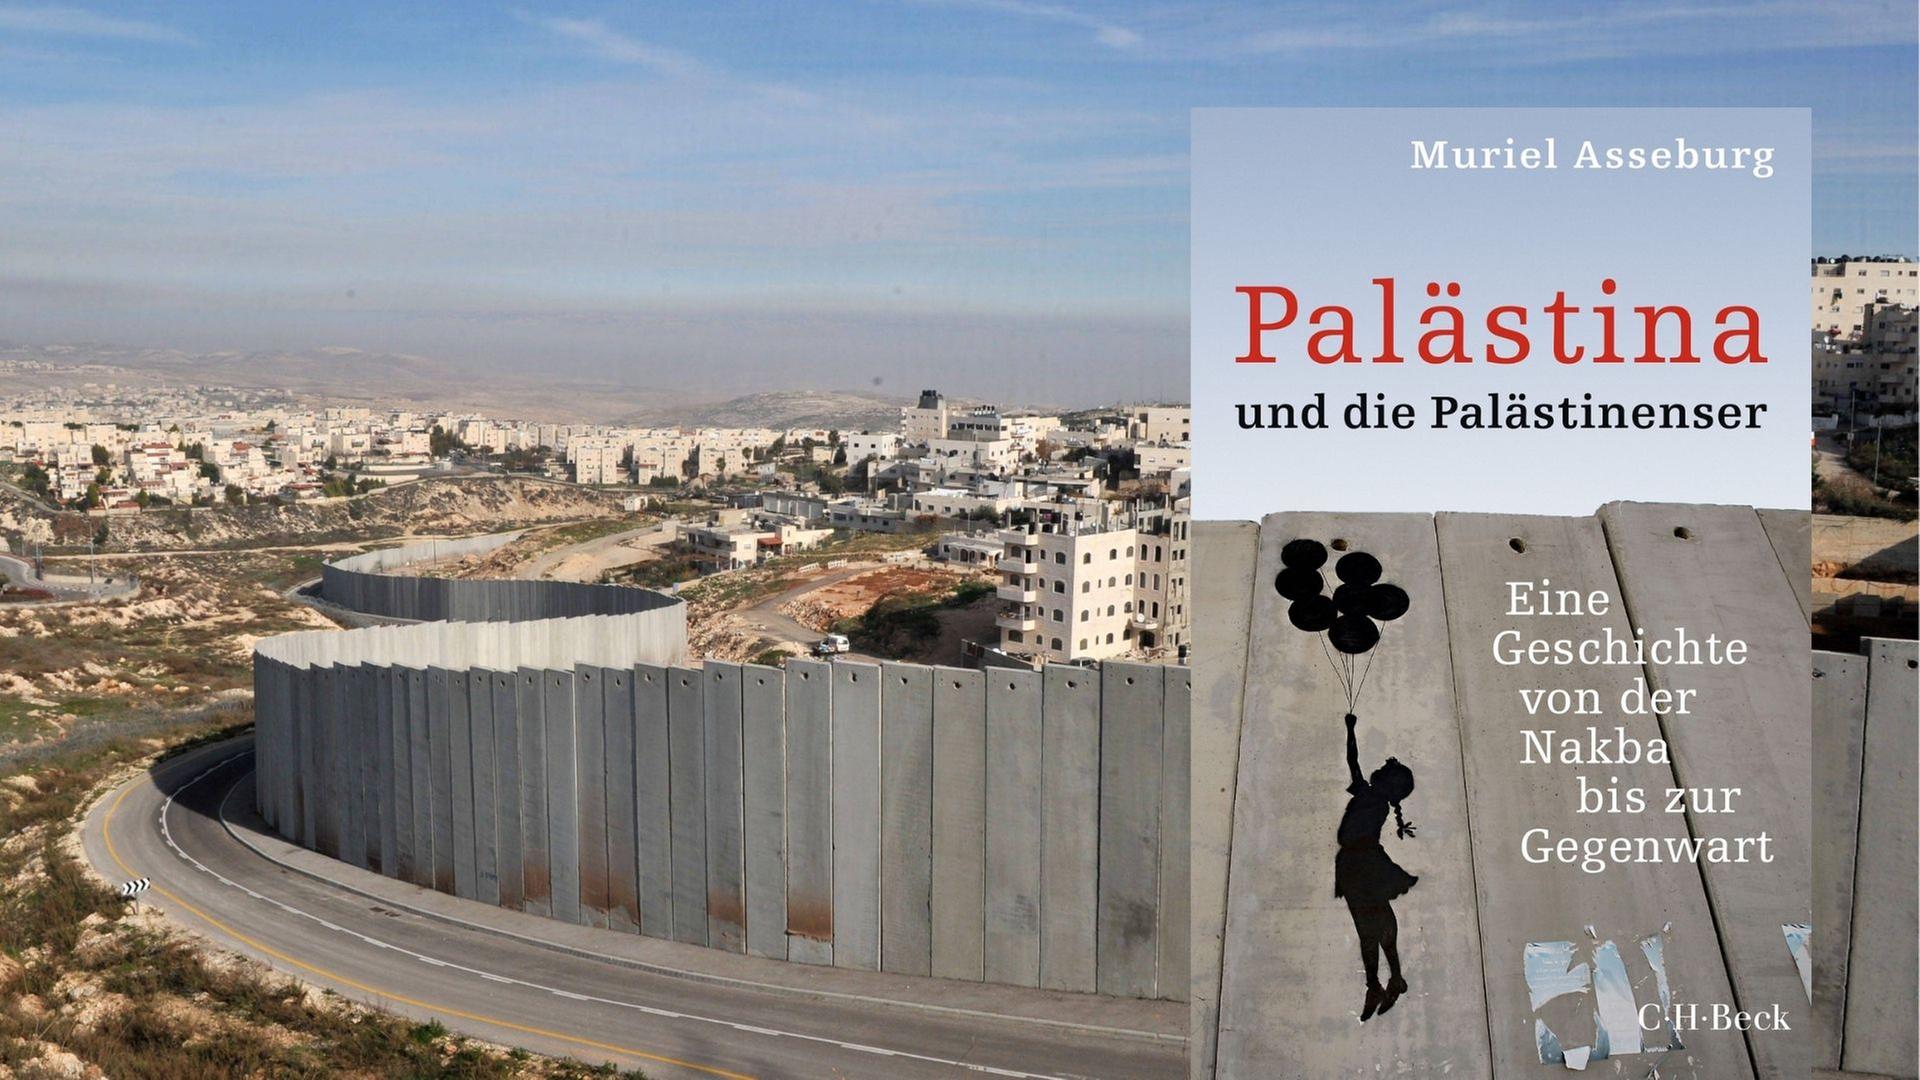 Muriel Asseburg: "Palästina und die Palästinenser. Eine Geschichte von der Nakba bis zur Gegenwart"